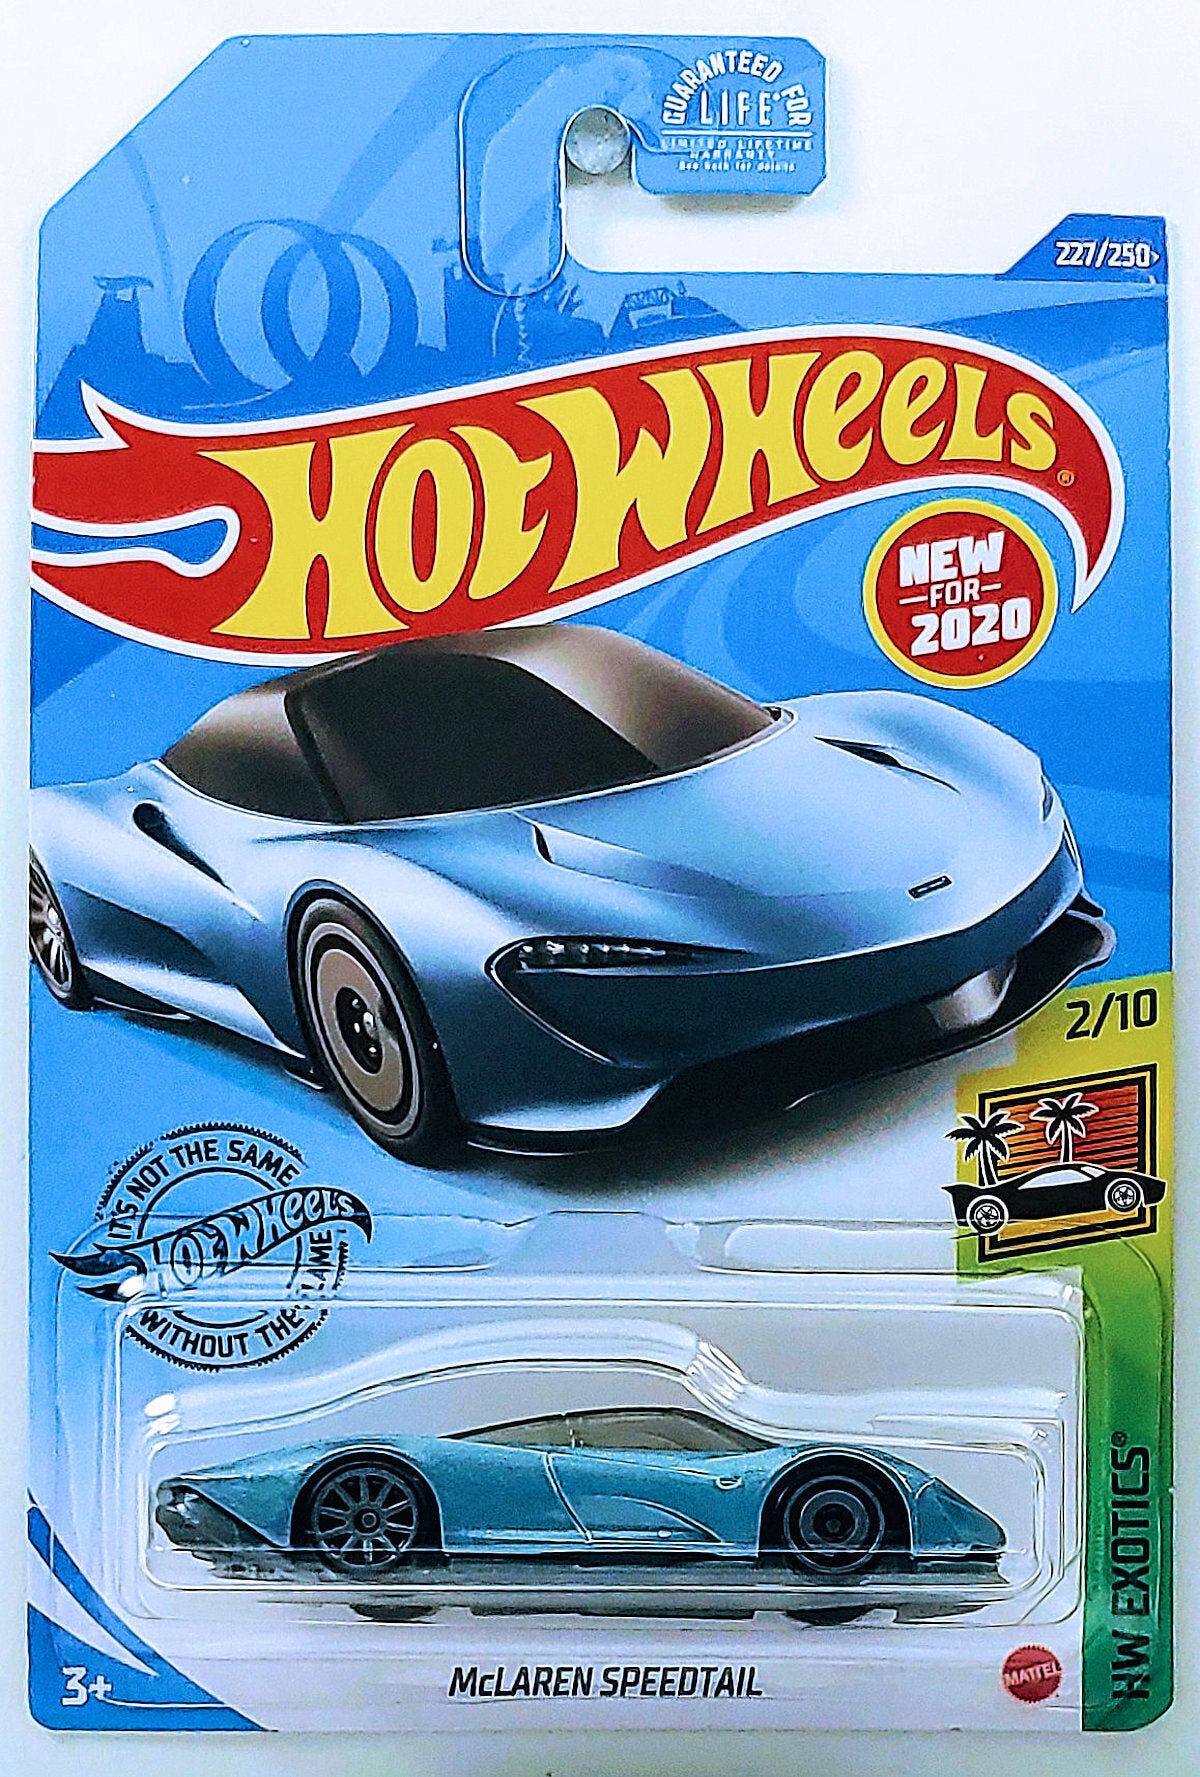 Hot Wheels 2020 - Collector # 227/250 - HW Exotics 2/10 - New Models - McLaren Speedtail - Steel Blue Metallic